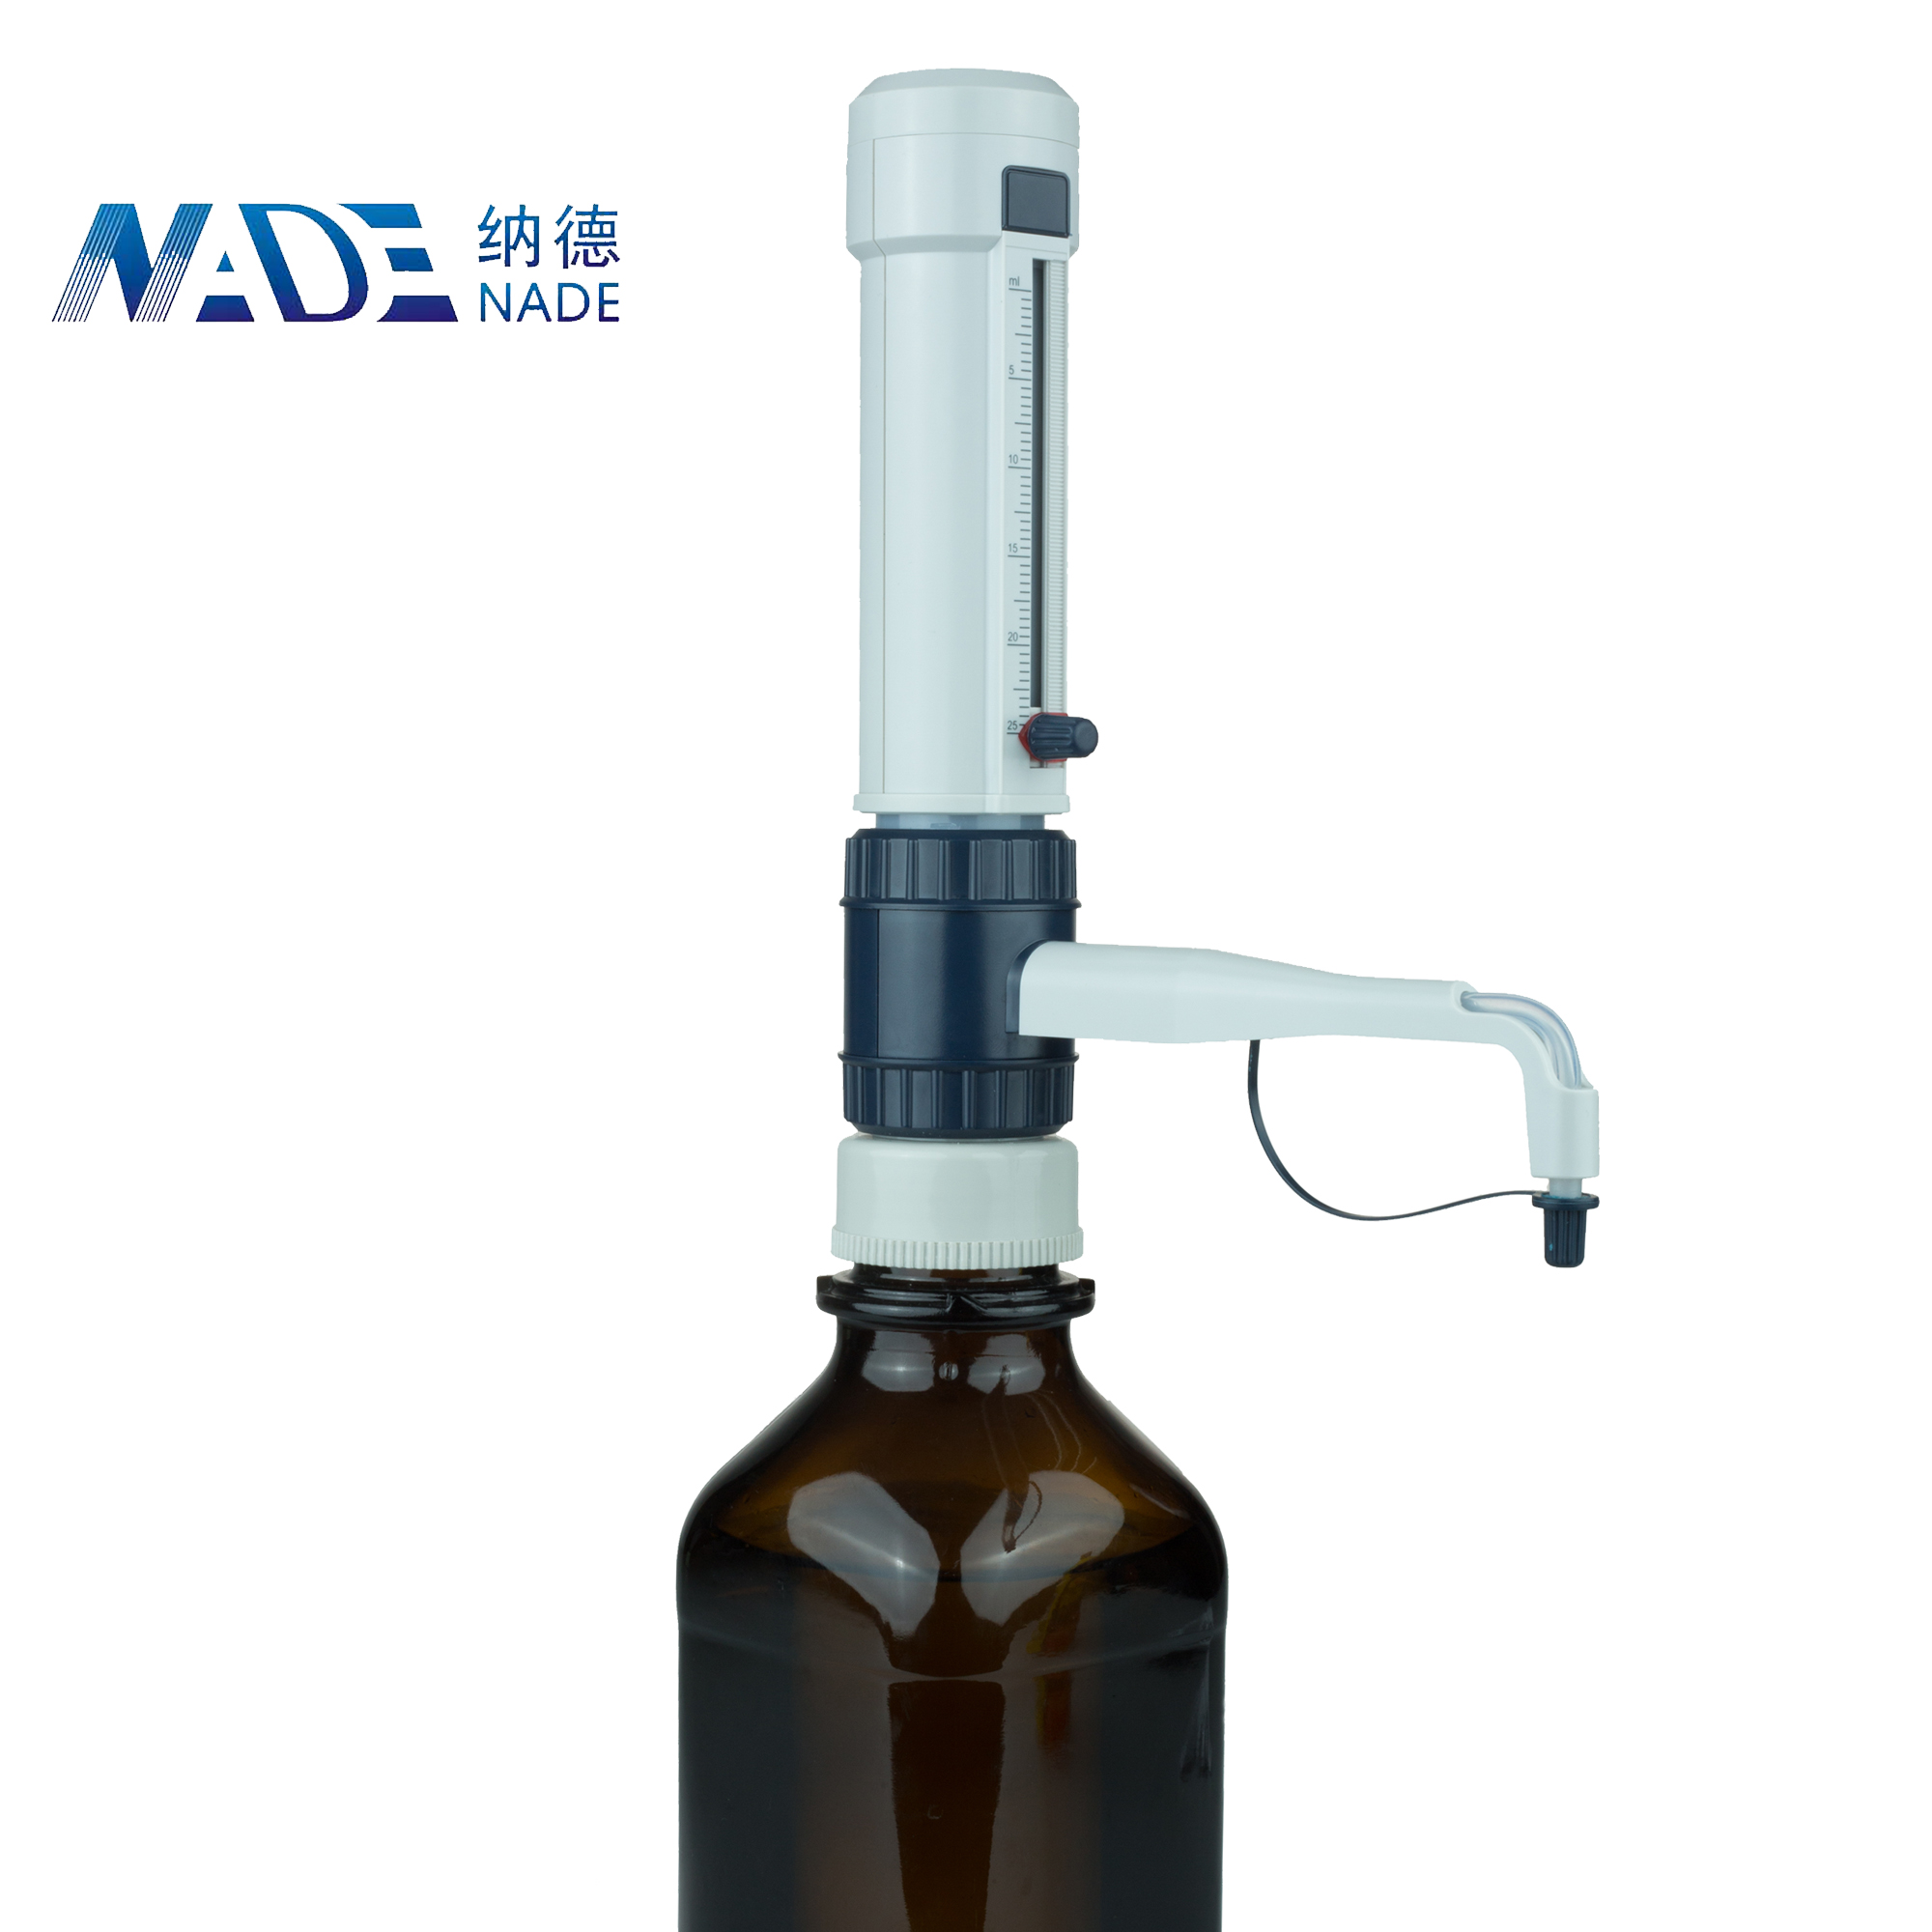 Nade DispensMate Plus Dispenser 731100020000 1.0-10.0 ml Plastic Distpenser